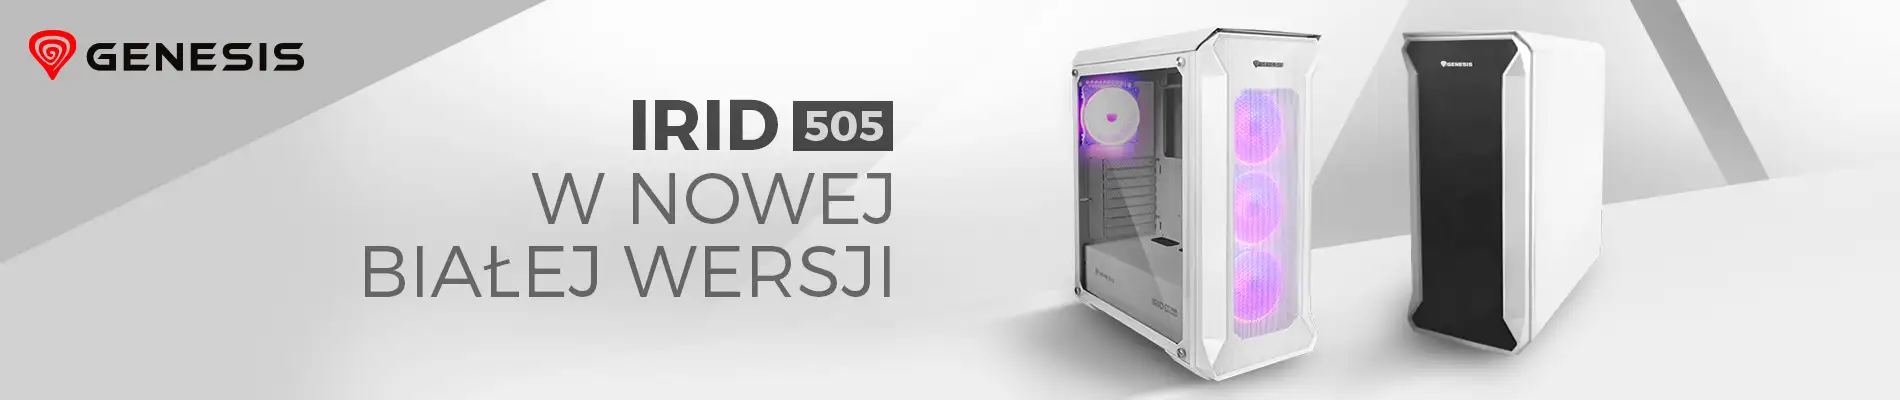 Genesis Irid 505 White Edition